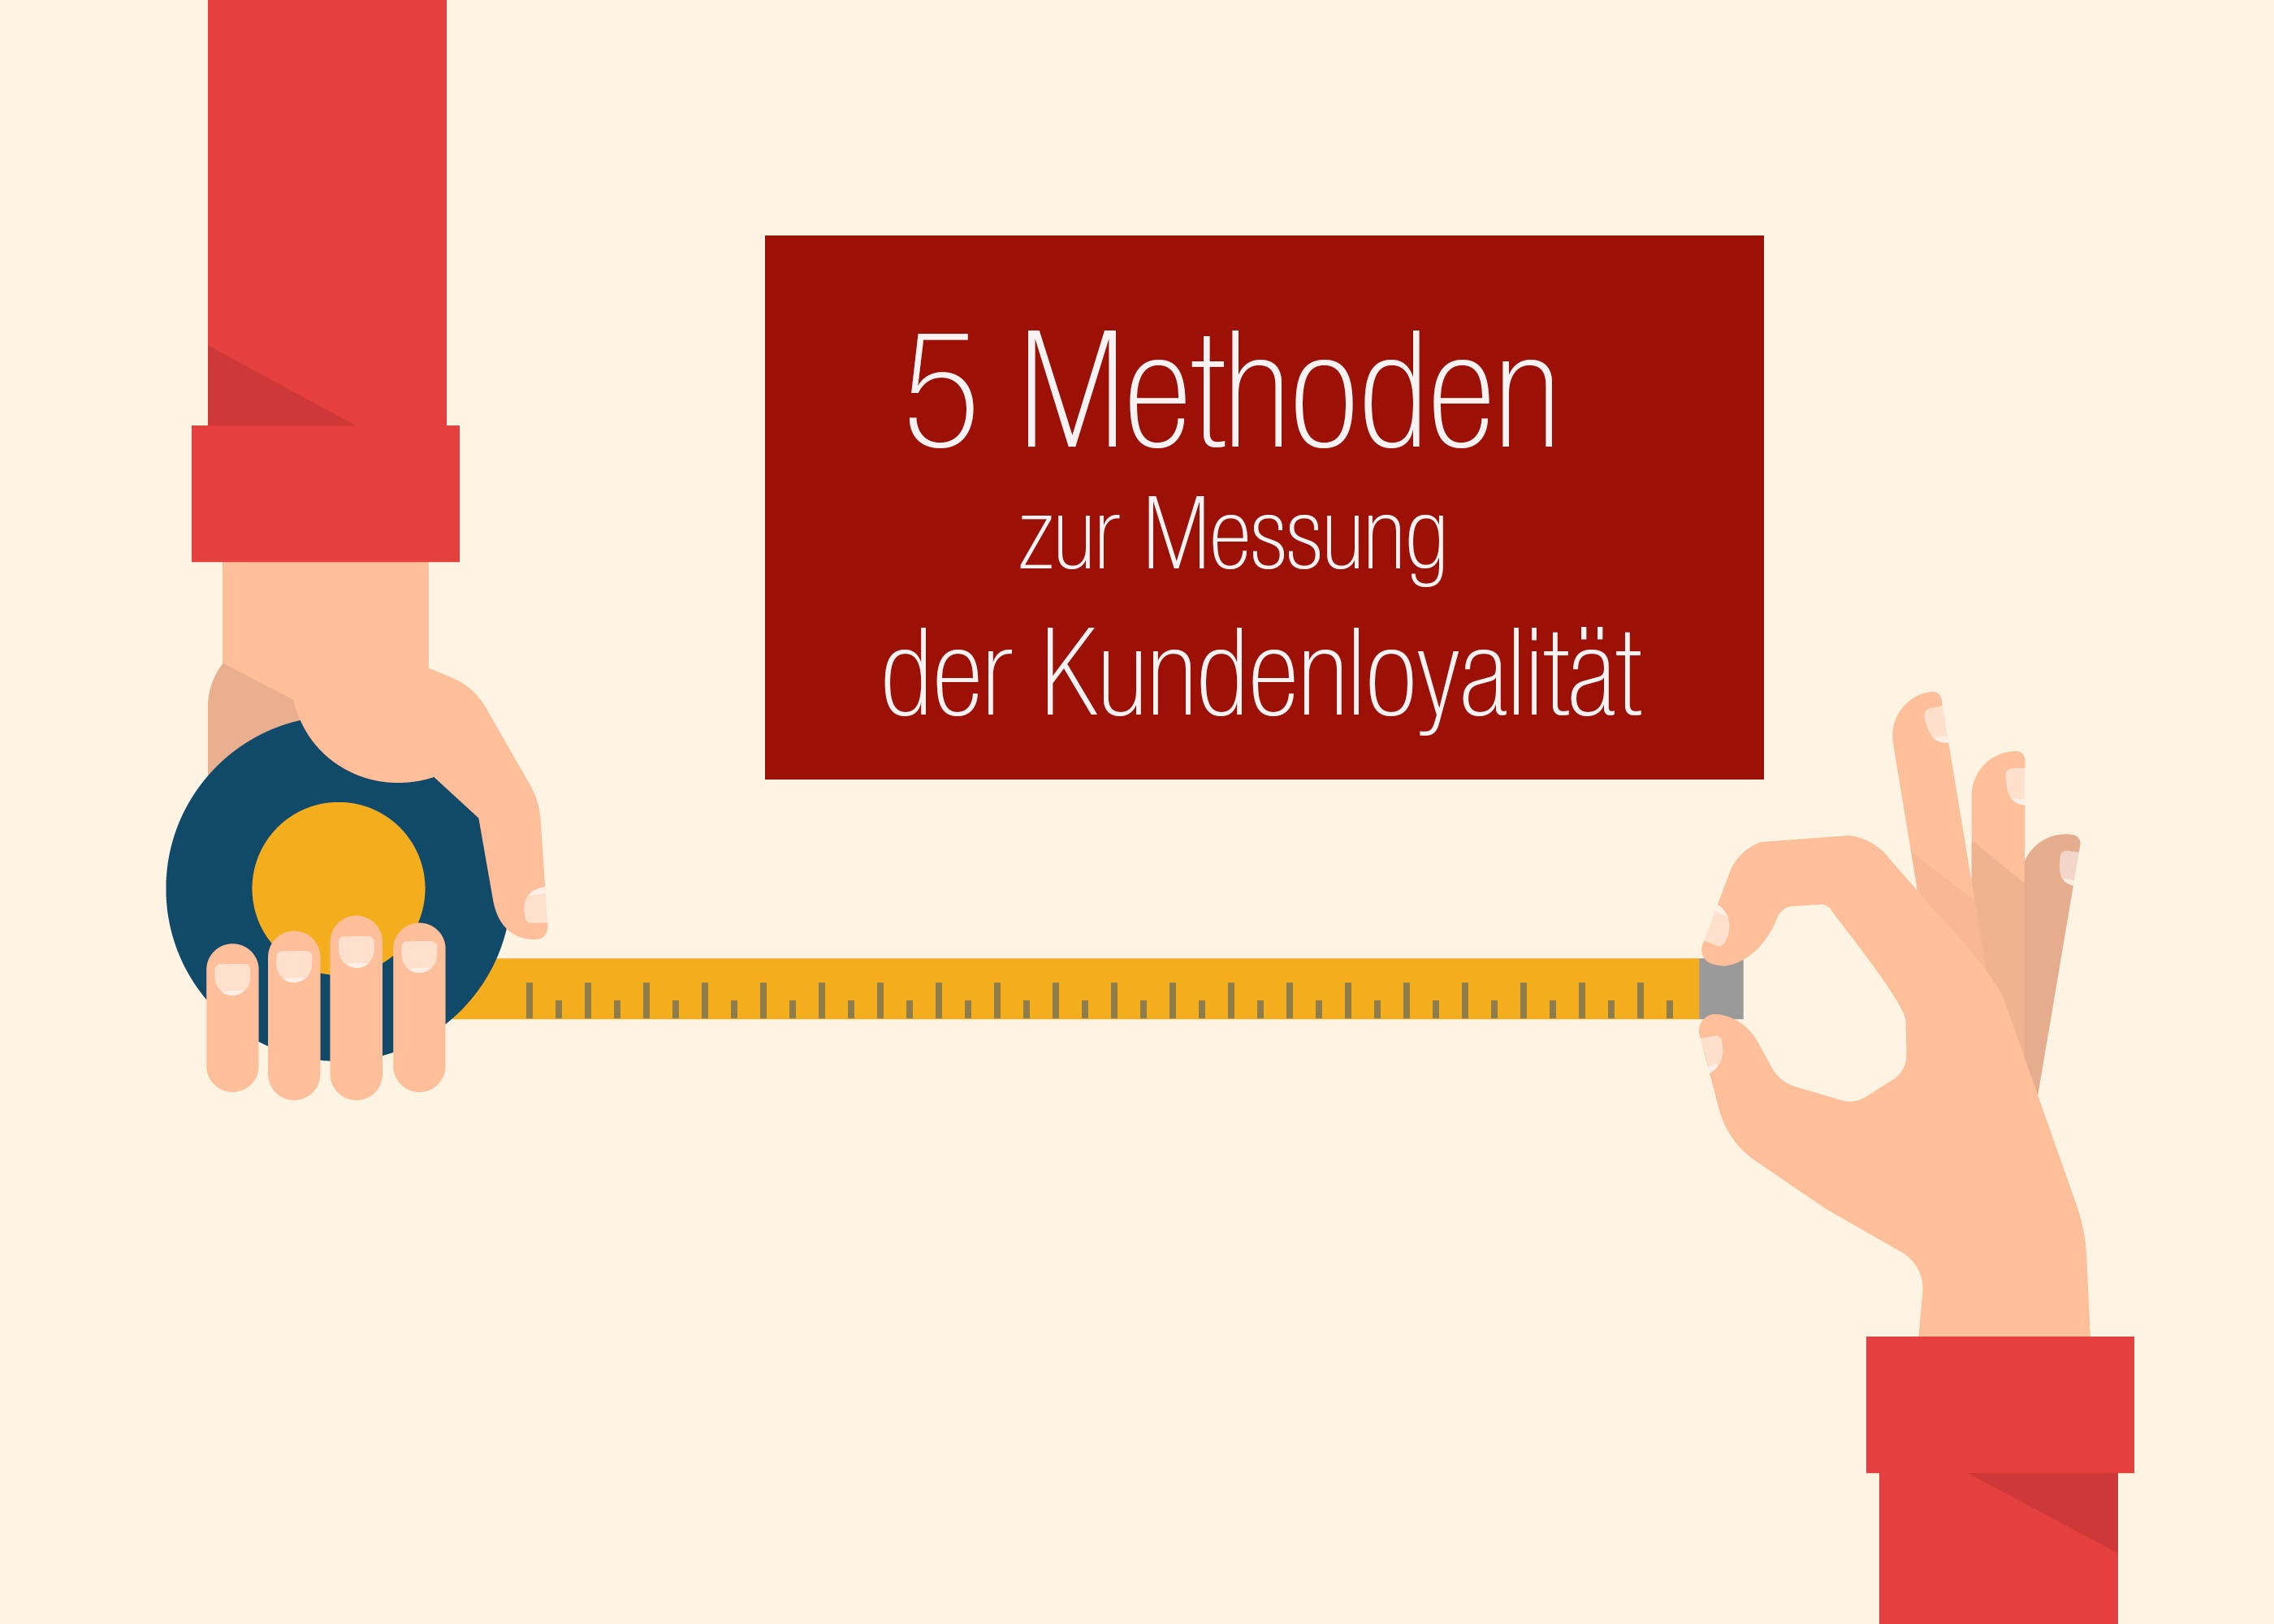 NPS Methodik im Vergleich - 5 Methoden zur Messung der Kundenloyalität